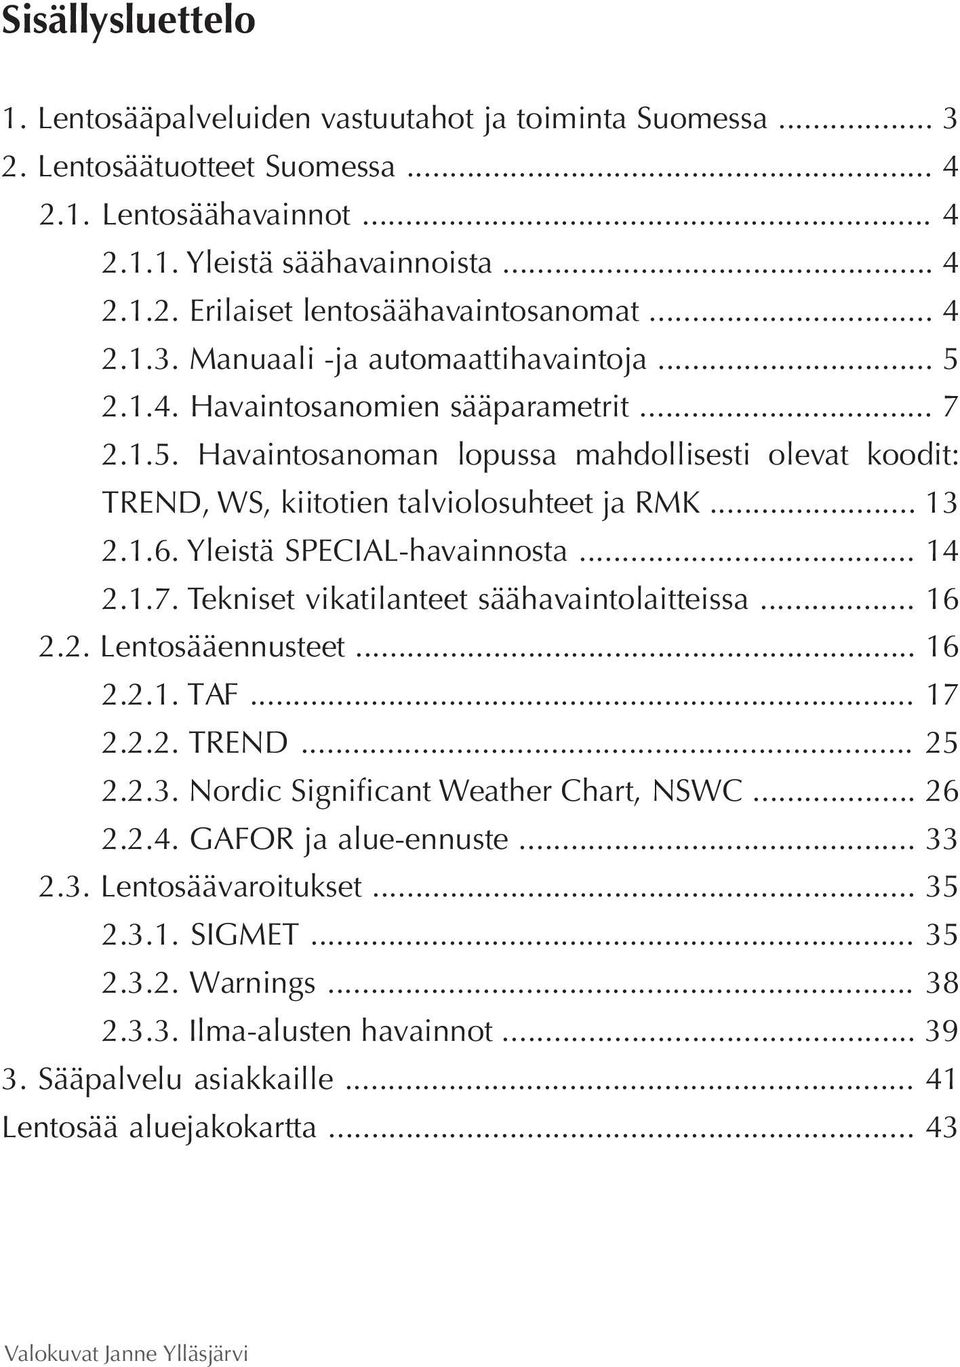 .. 13 2.1.6. Yleistä SPECIAL-havainnosta... 14 2.1.7. Tekniset vikatilanteet säähavaintolaitteissa... 16 2.2. Lentosääennusteet... 16 2.2.1. TAF... 17 2.2.2. TREND... 25 2.2.3. Nordic Significant Weather Chart, NSWC.